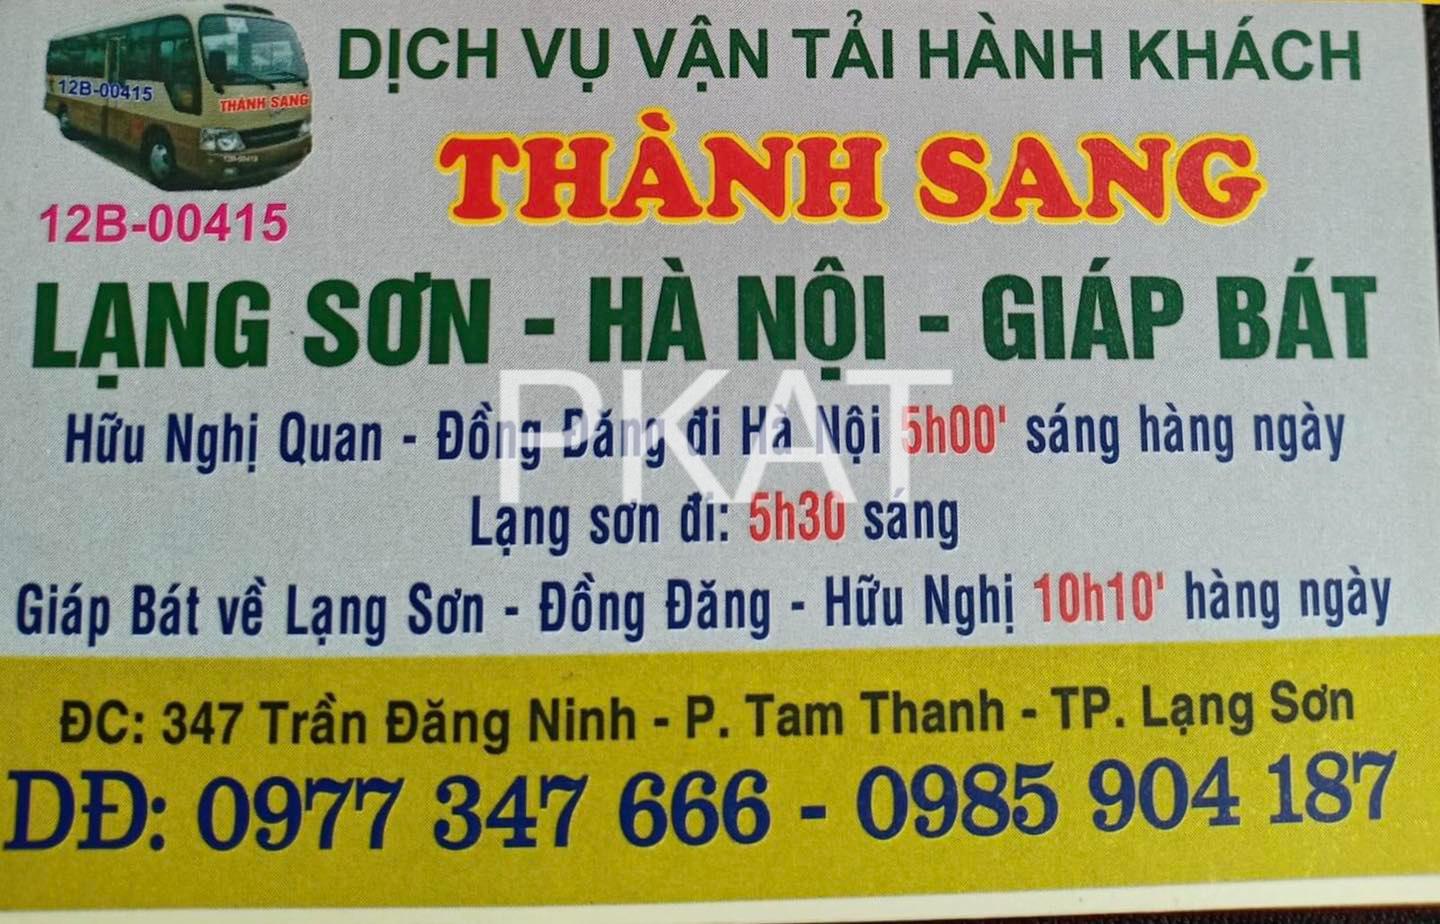 Nhà xe Lạng Sơn Giáp Bát Thành Sang